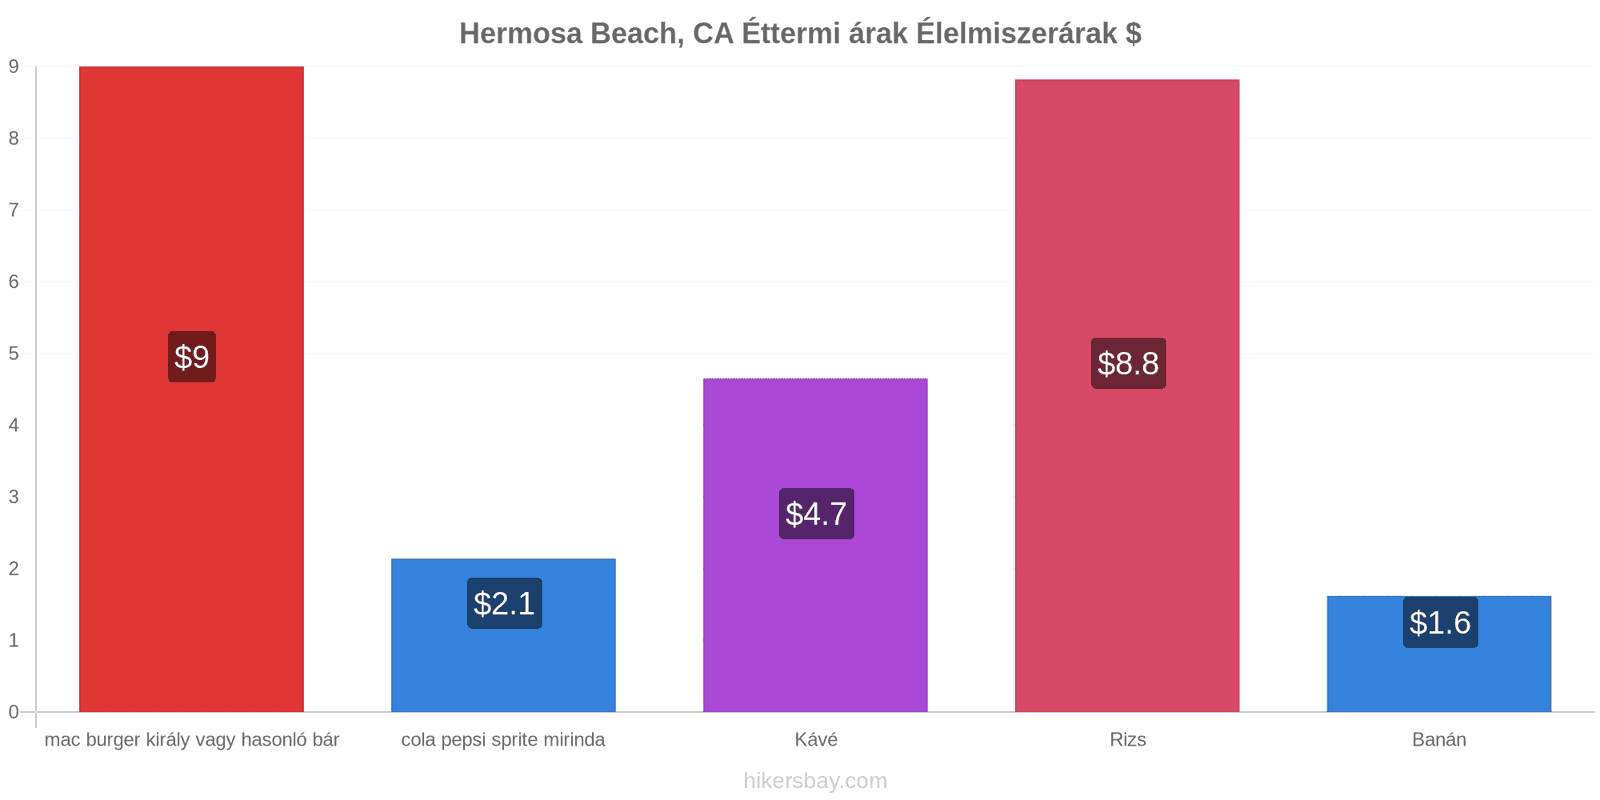 Hermosa Beach, CA ár változások hikersbay.com